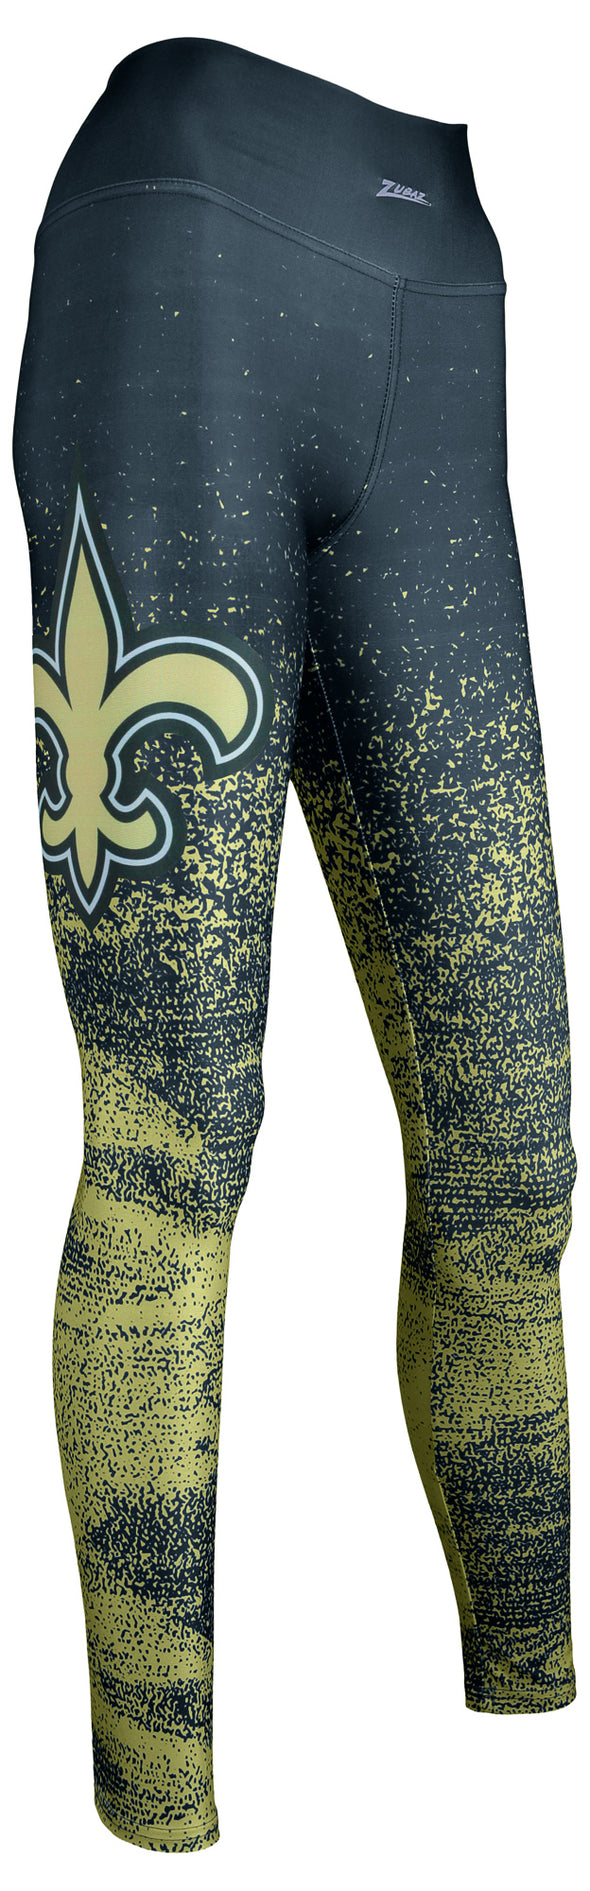 Zubaz NFL Women's New Orleans Saints Static Fade Leggings, Black/Tan